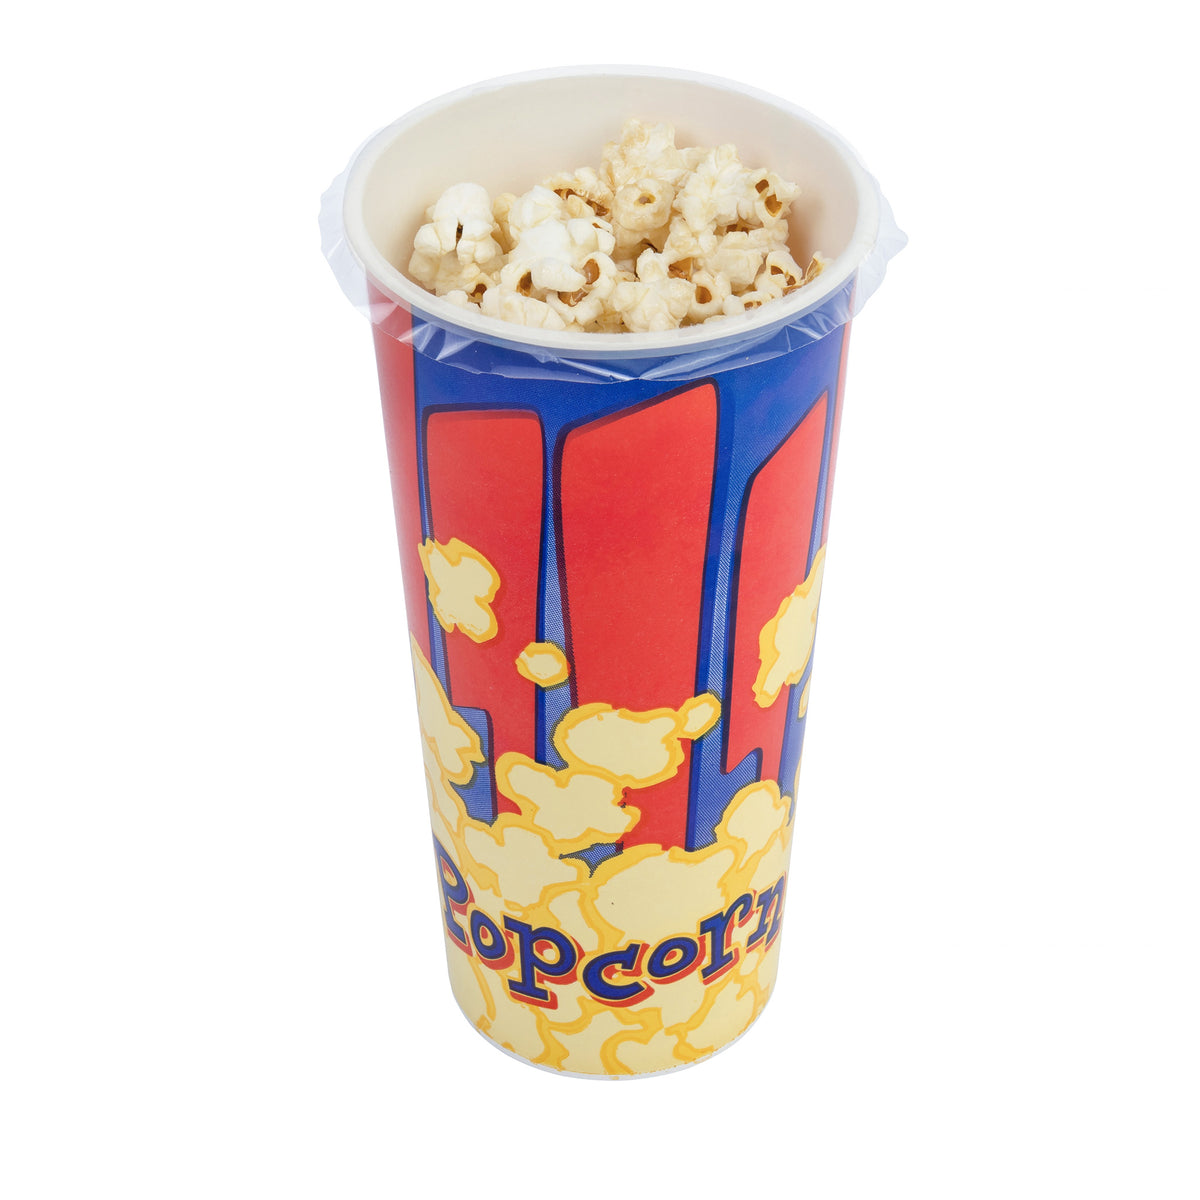 Pre-filled Popcorn Tubs 35g